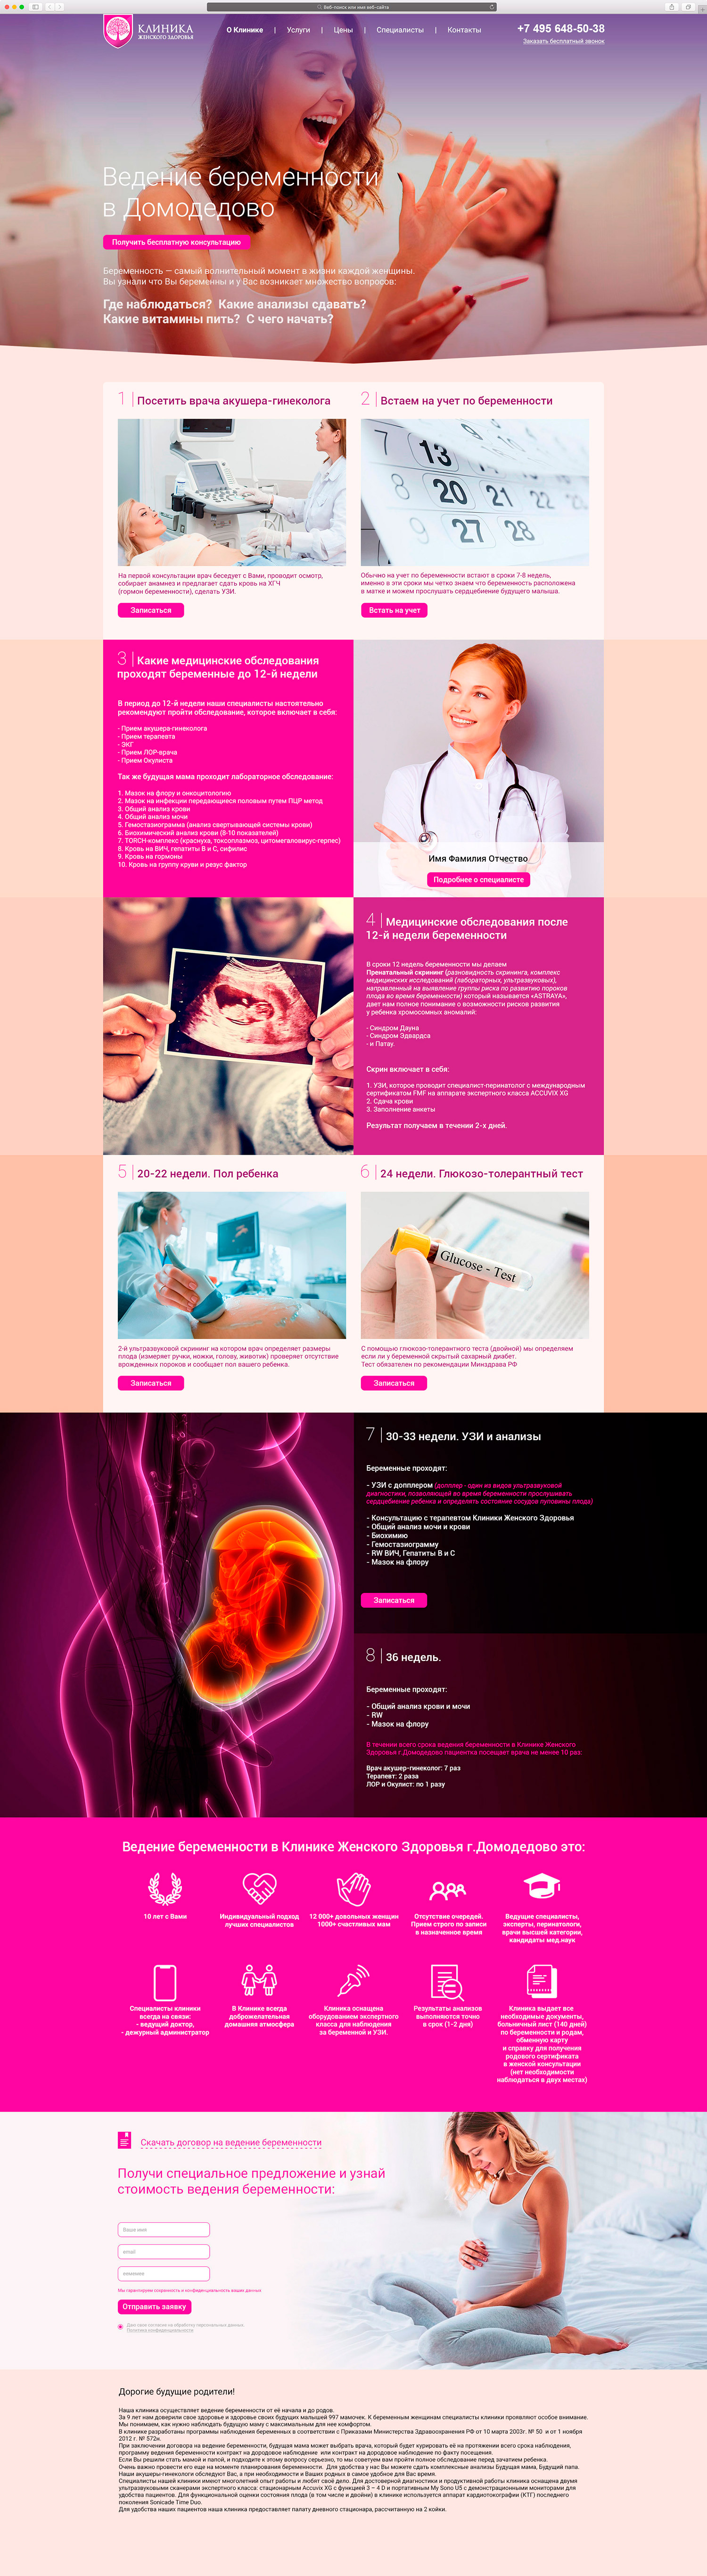 Разработка сайта «Клиники женского здоровья»